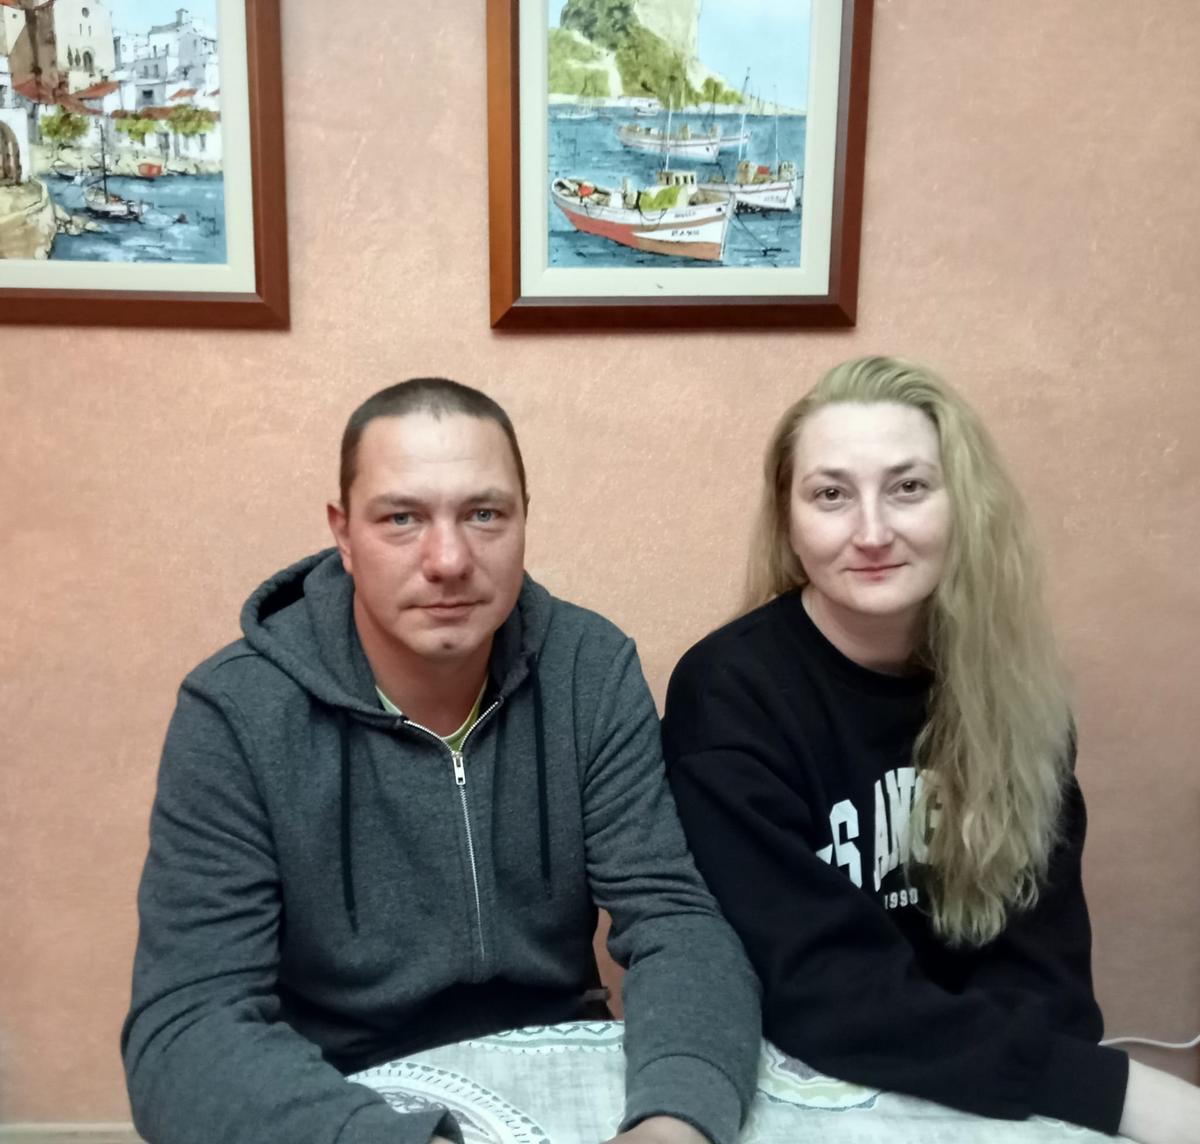 Yulia, hija de Sonia Bespalova, y su esposo Konstantin lograron salir de Ucrania, no sin dificultades, y ya residen en su casa de Vila-real.t